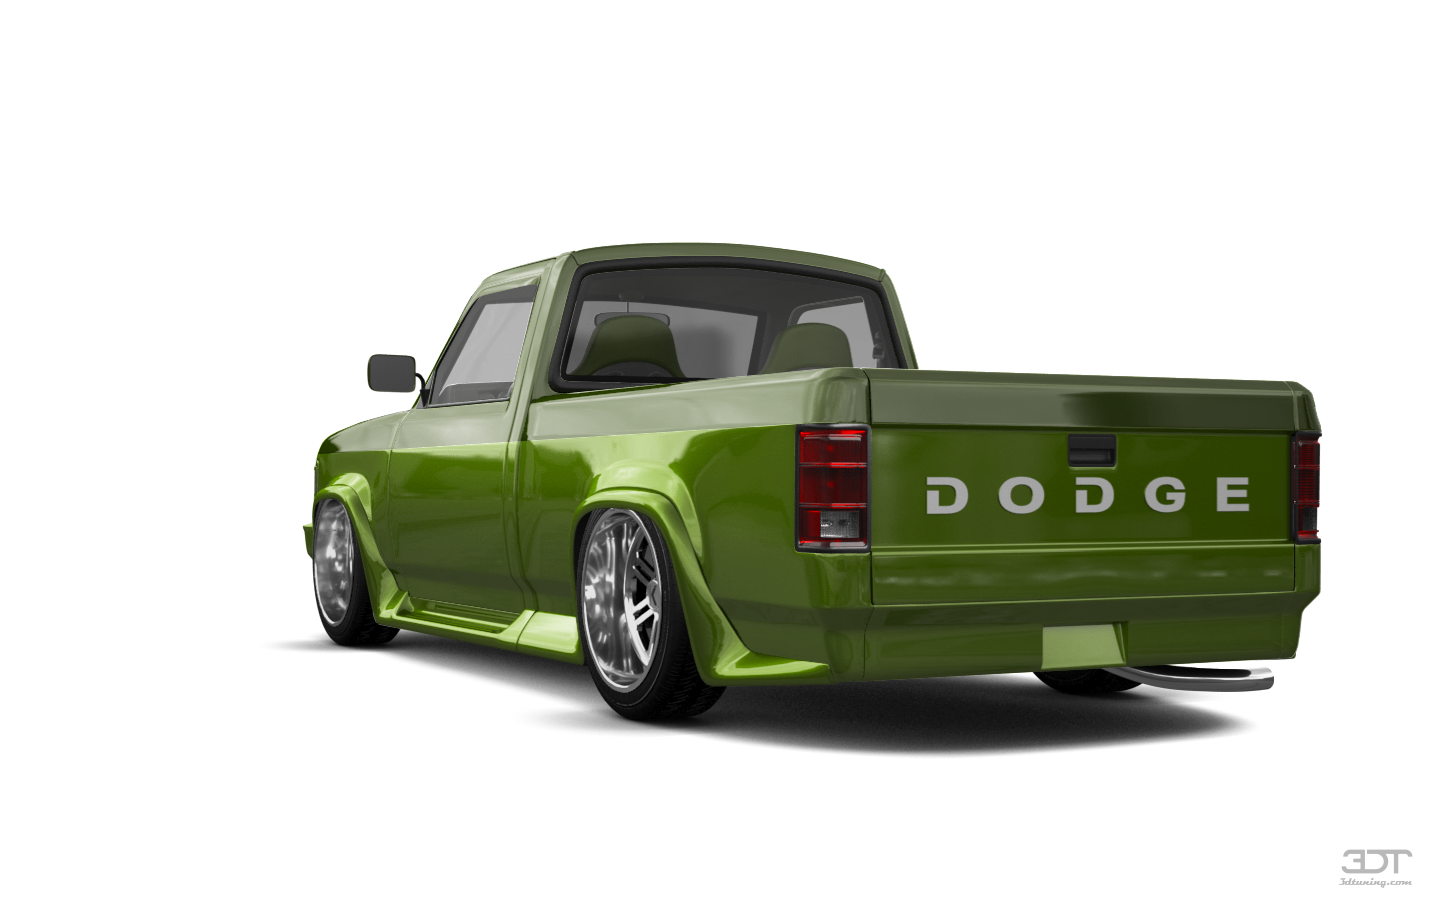 Dodge Dakota Regular Cab 2 Door pickup truck 1987